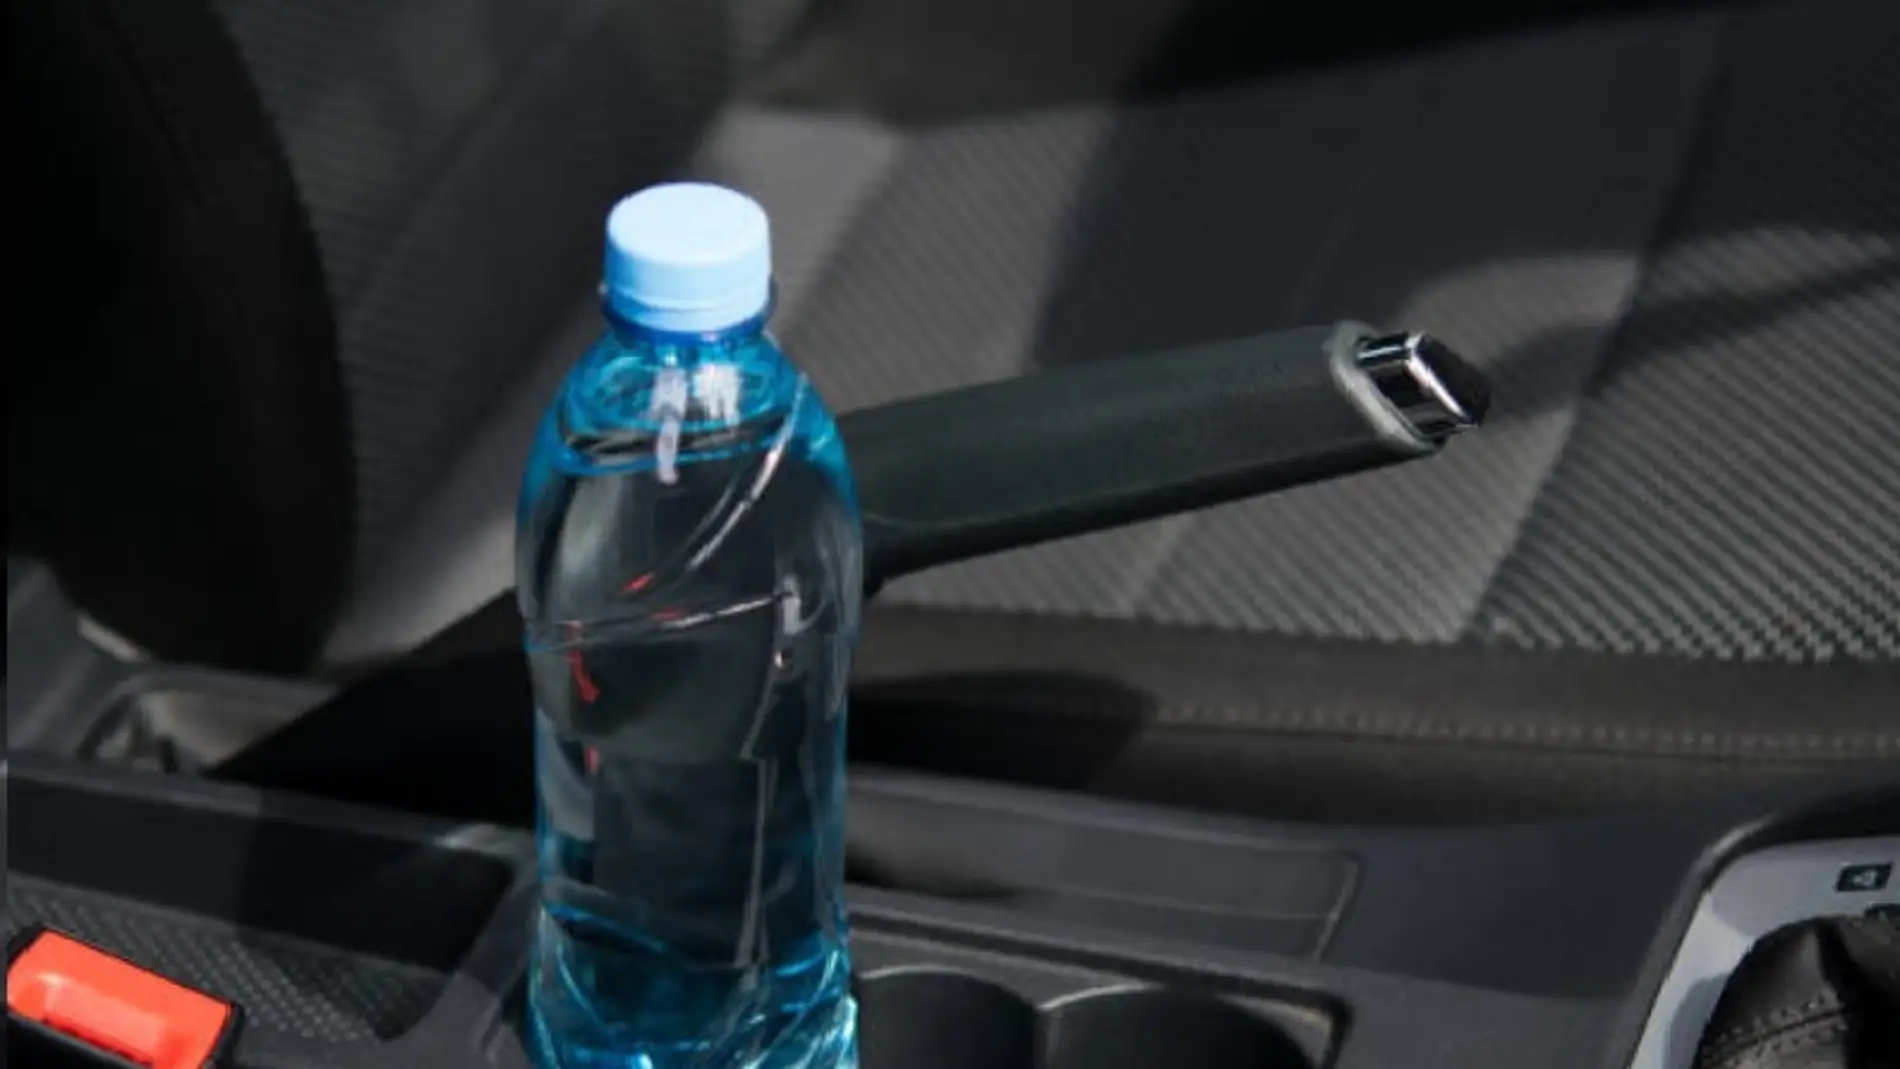 Botella de agua en el interior de un vehículo